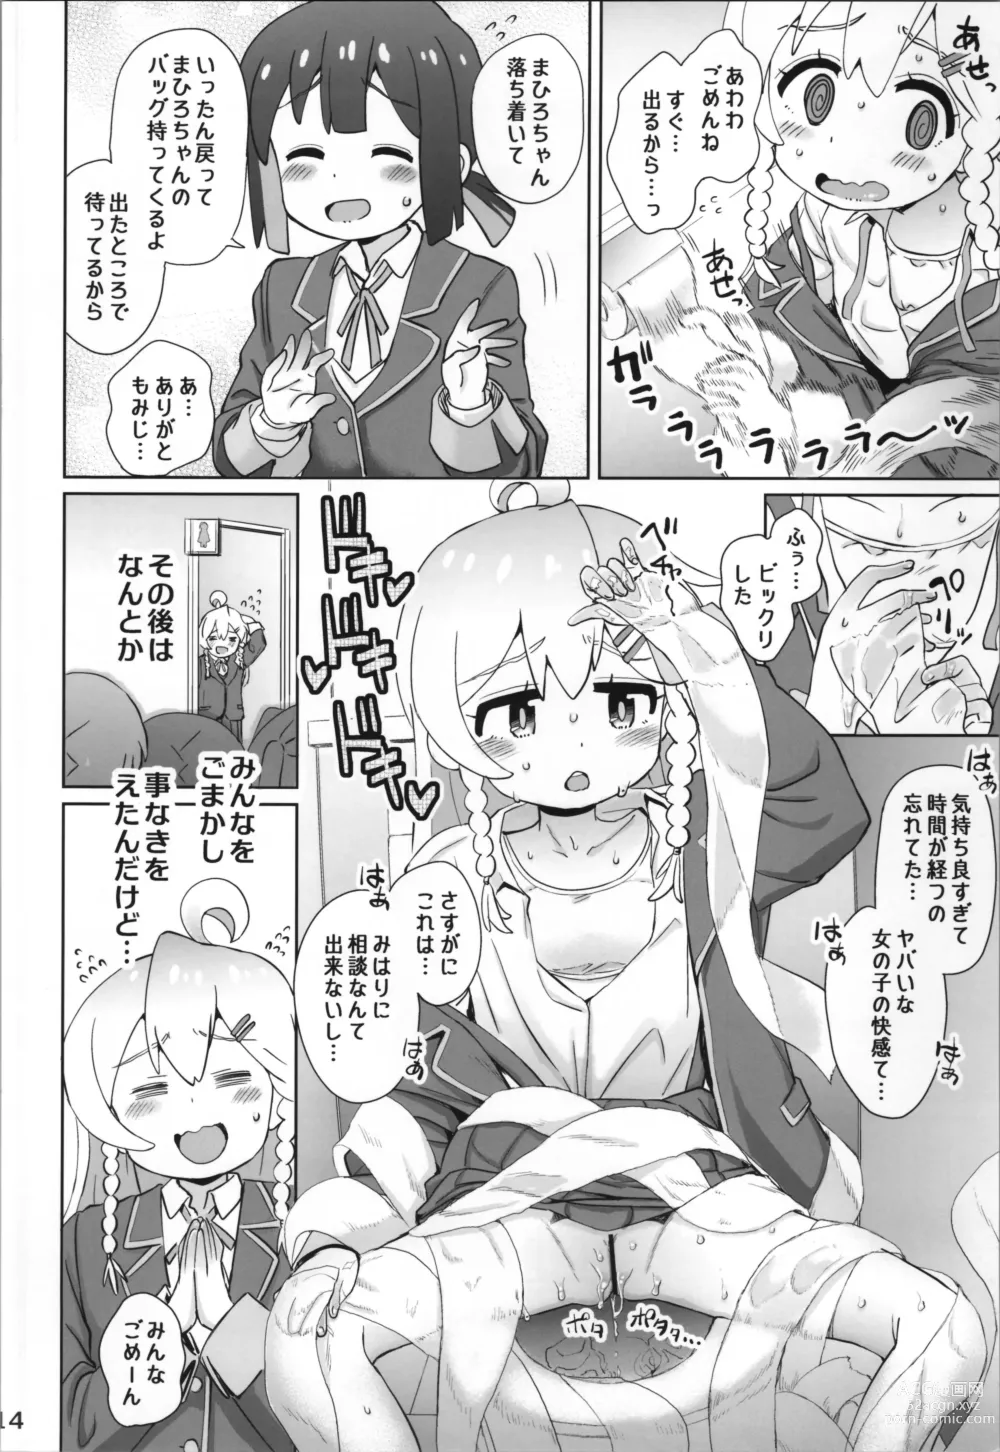 Page 14 of doujinshi Onii-chan wa Omezame?!